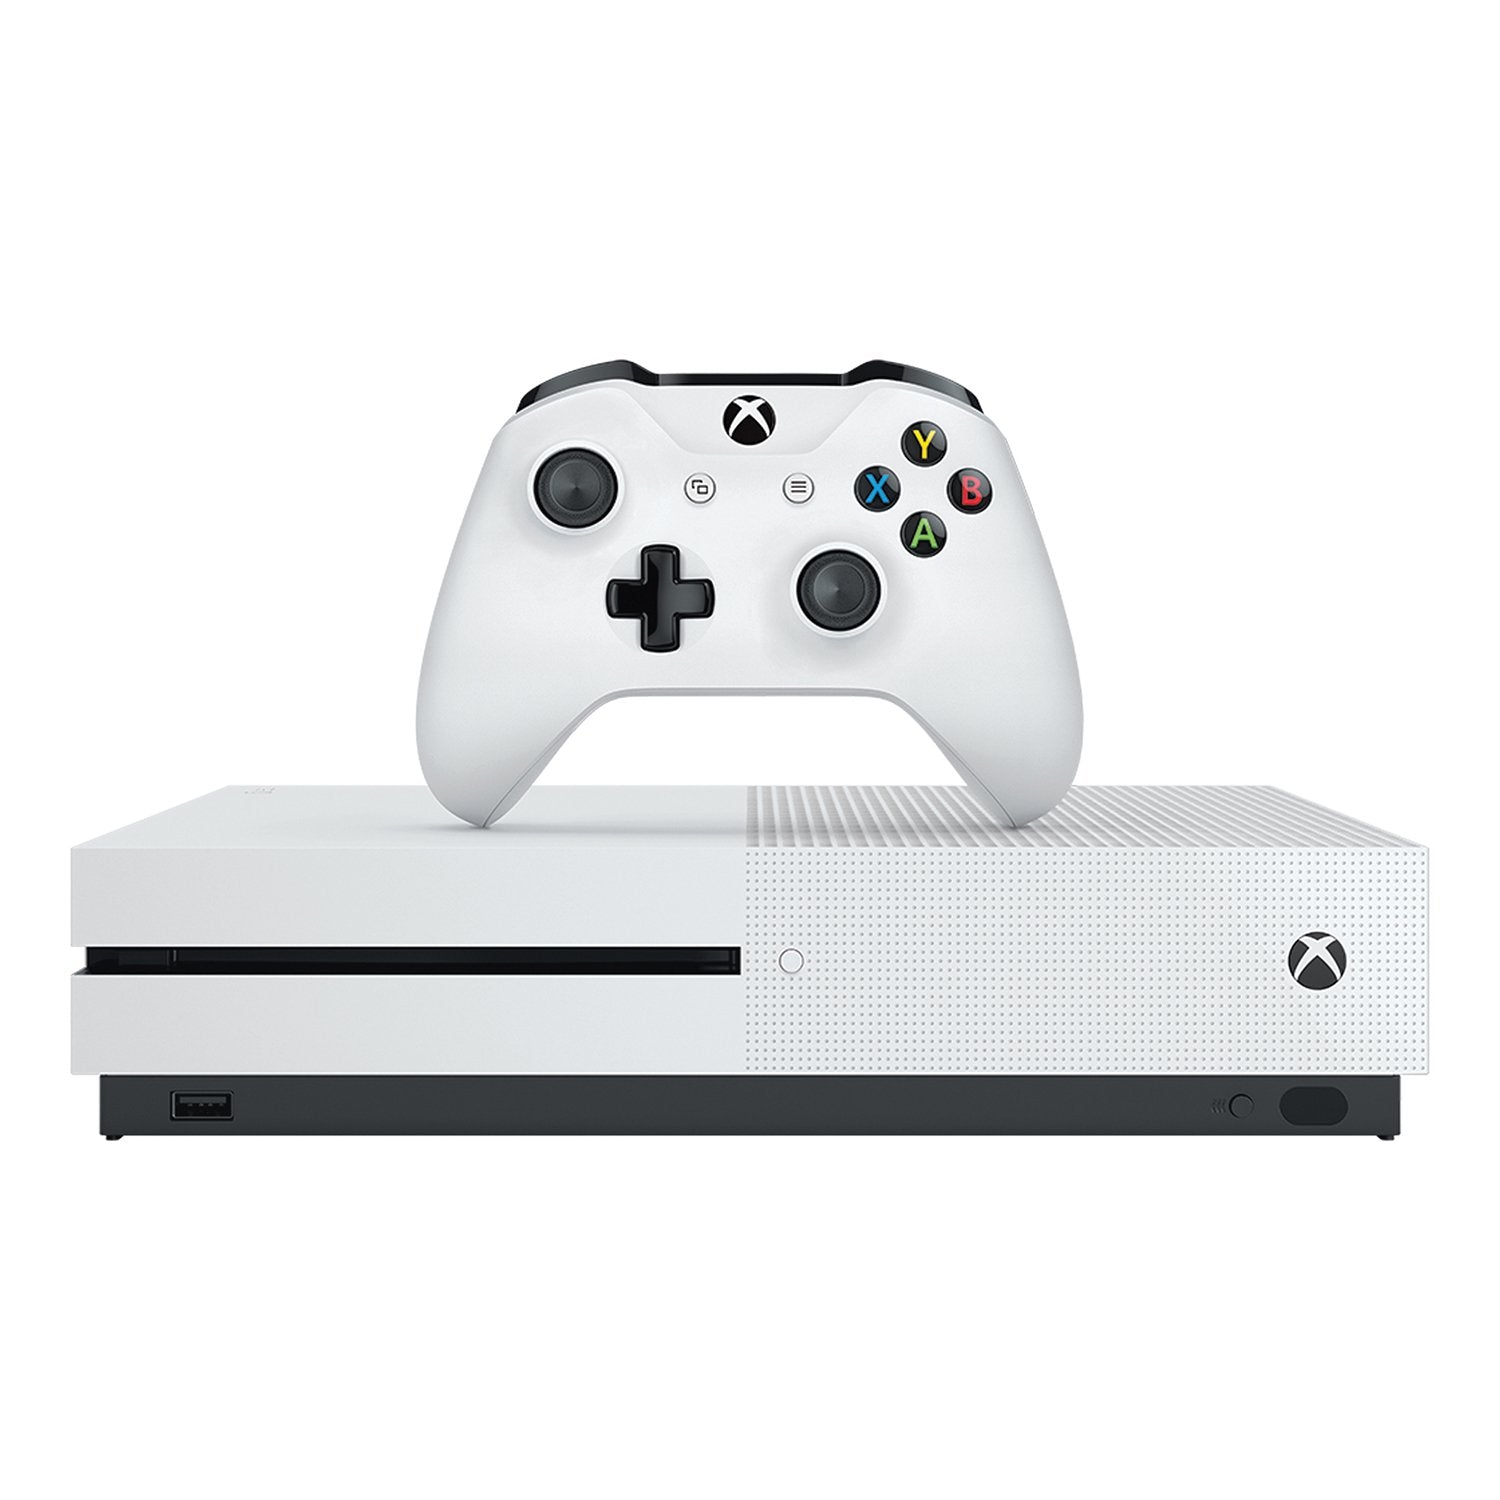 Xbox One S 1TB Console - White